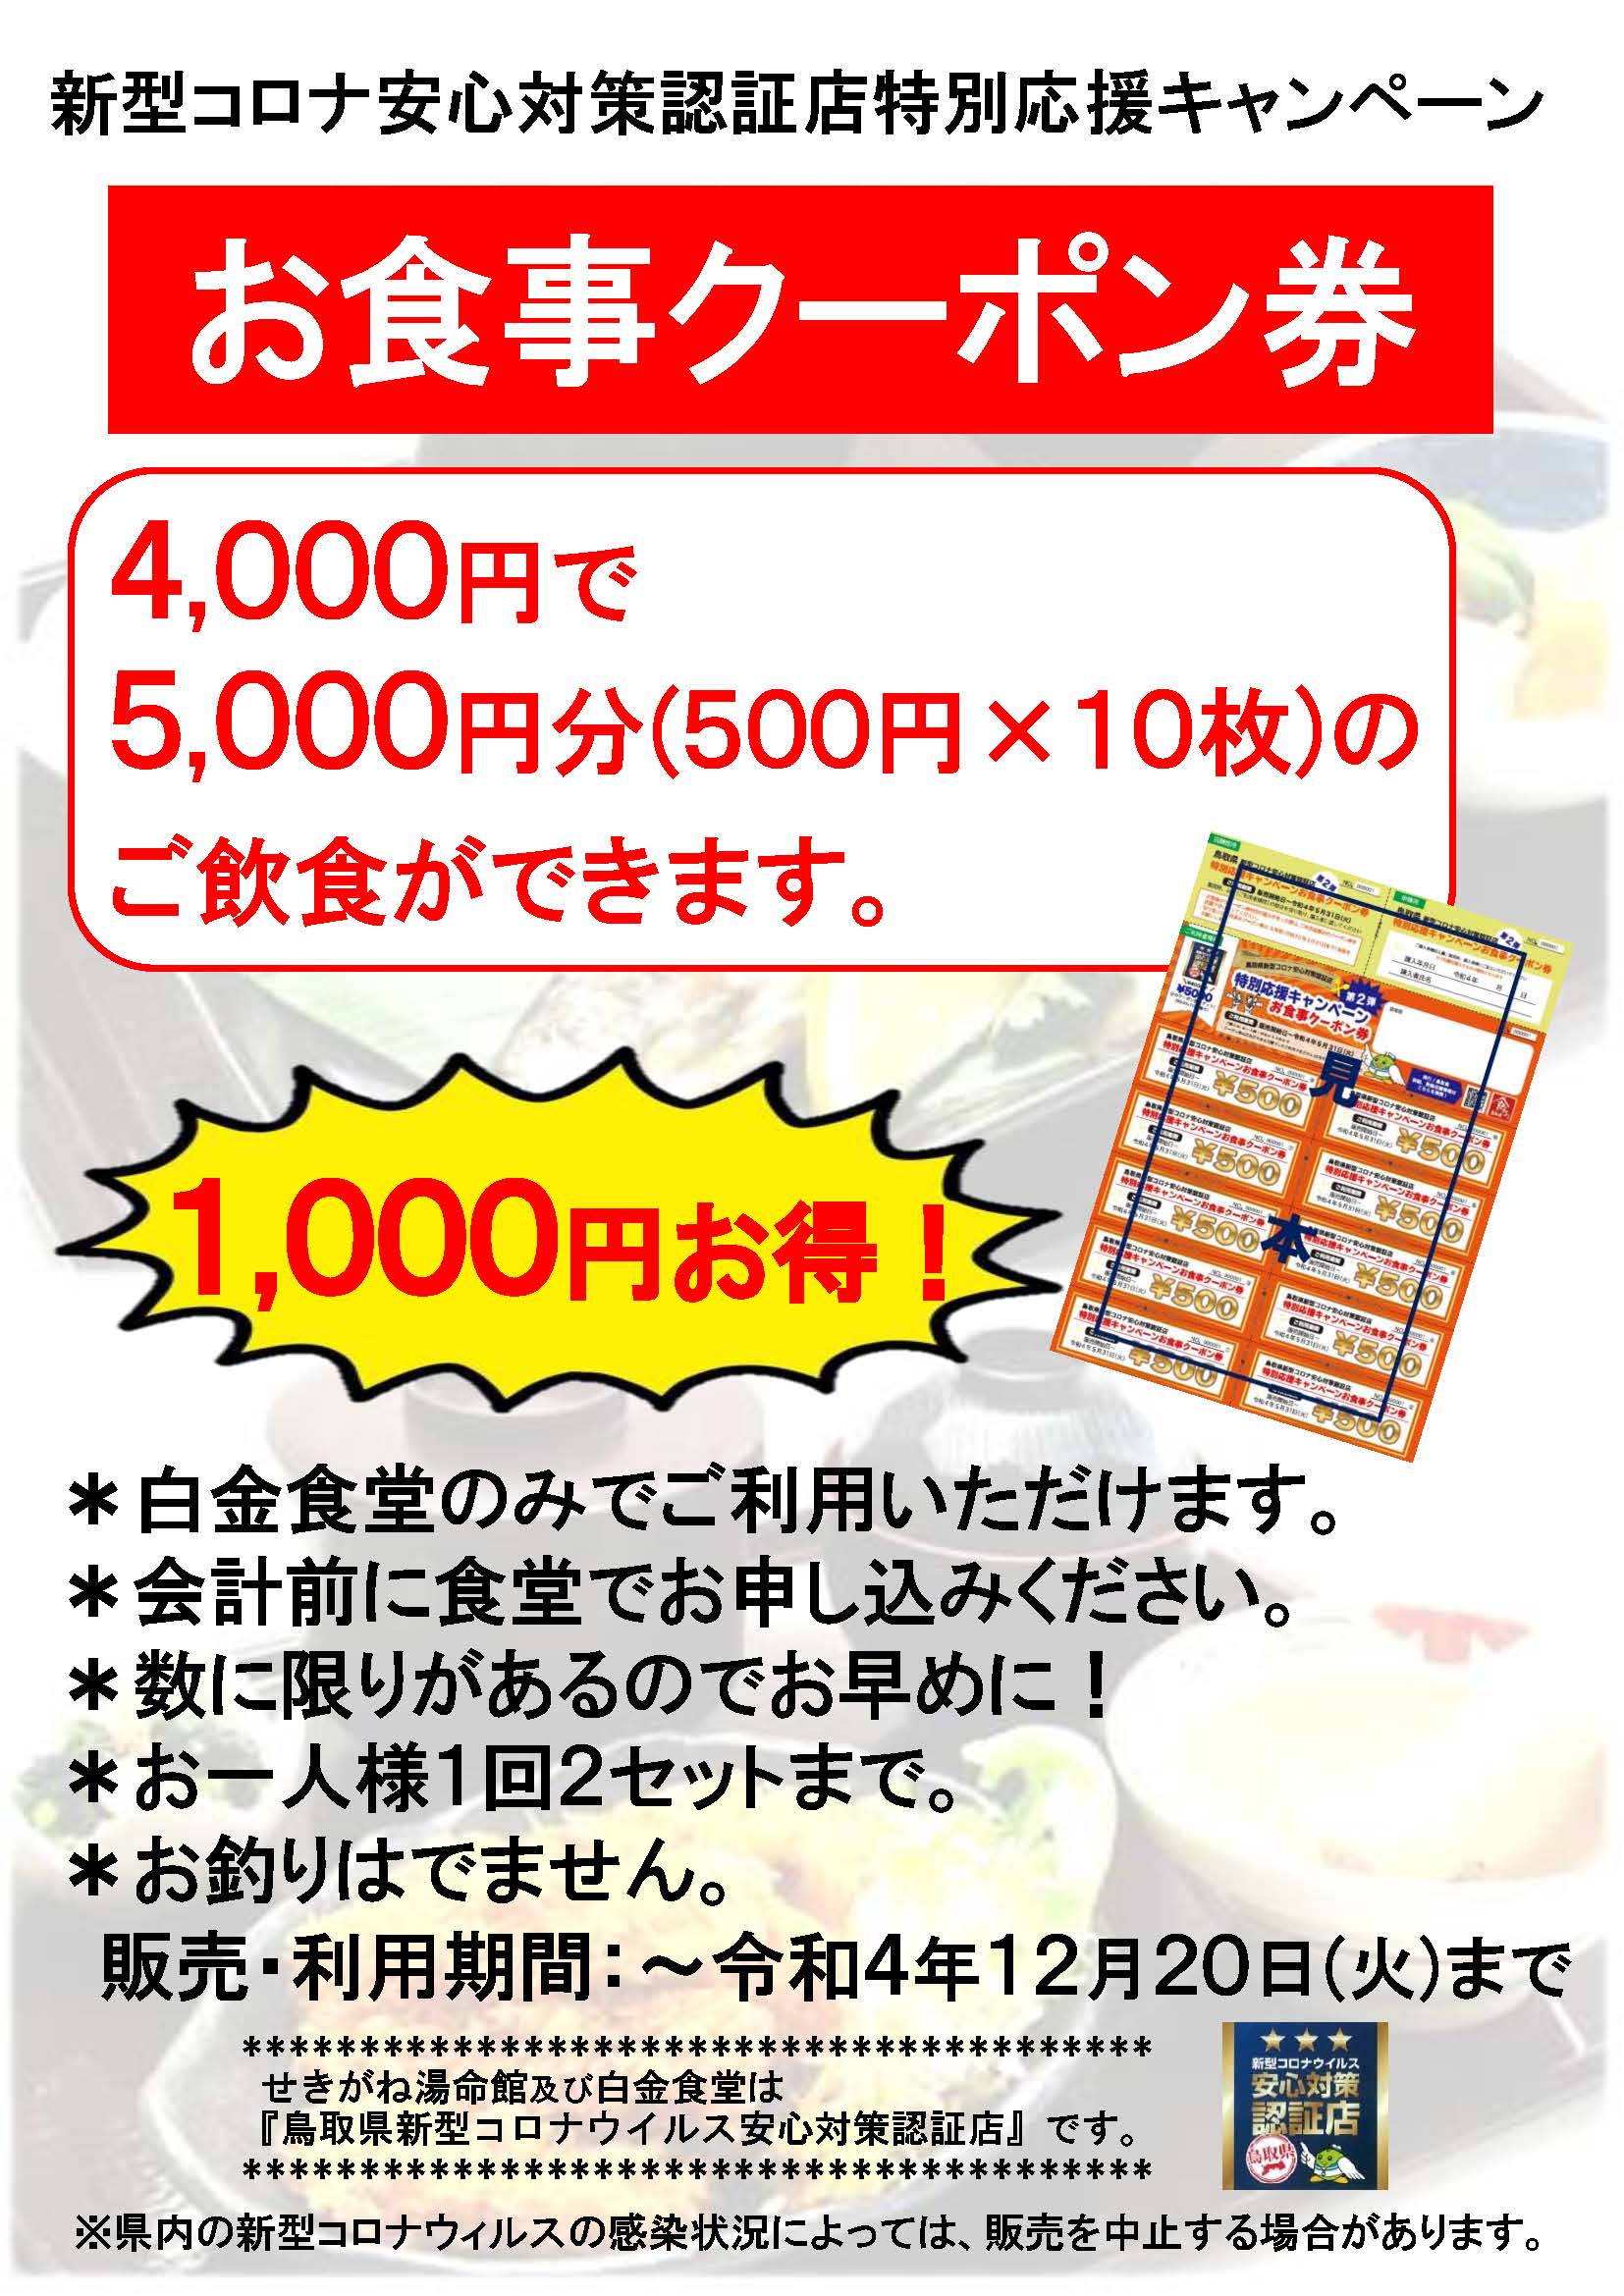 【春夏新作】H-Dクーポン券 (45000円相当) ショッピング